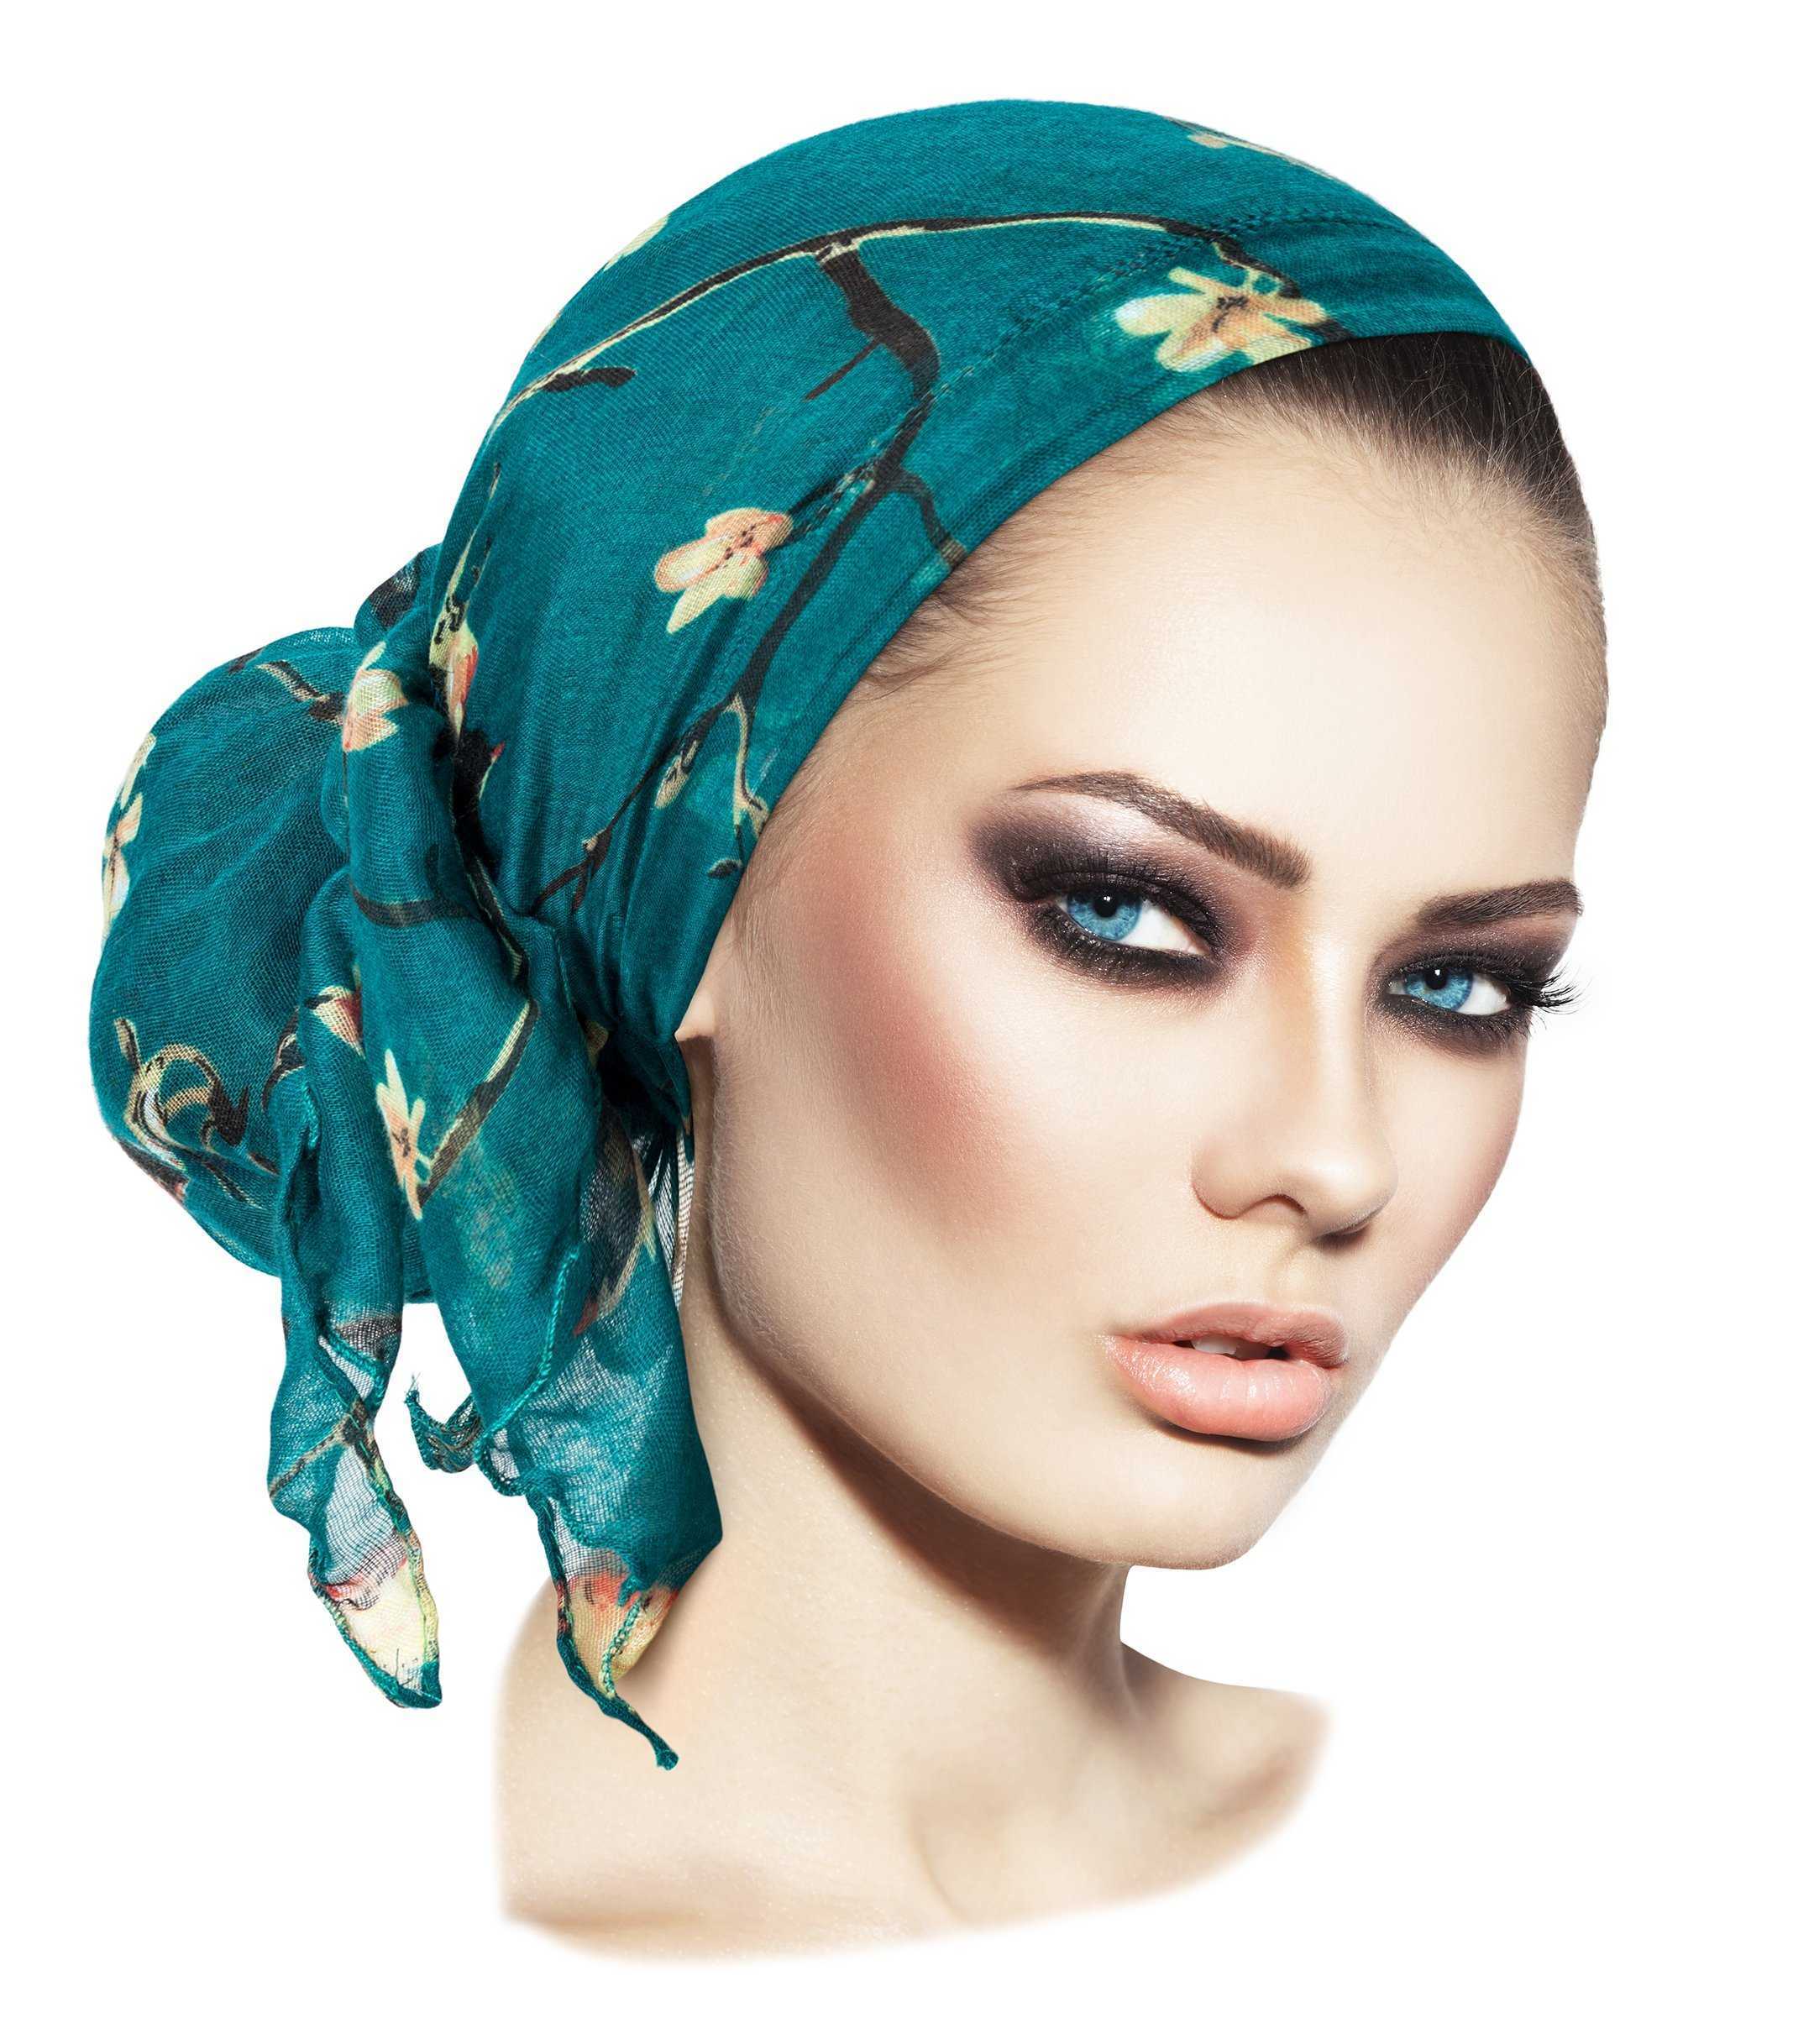 Как одеть платок на голову